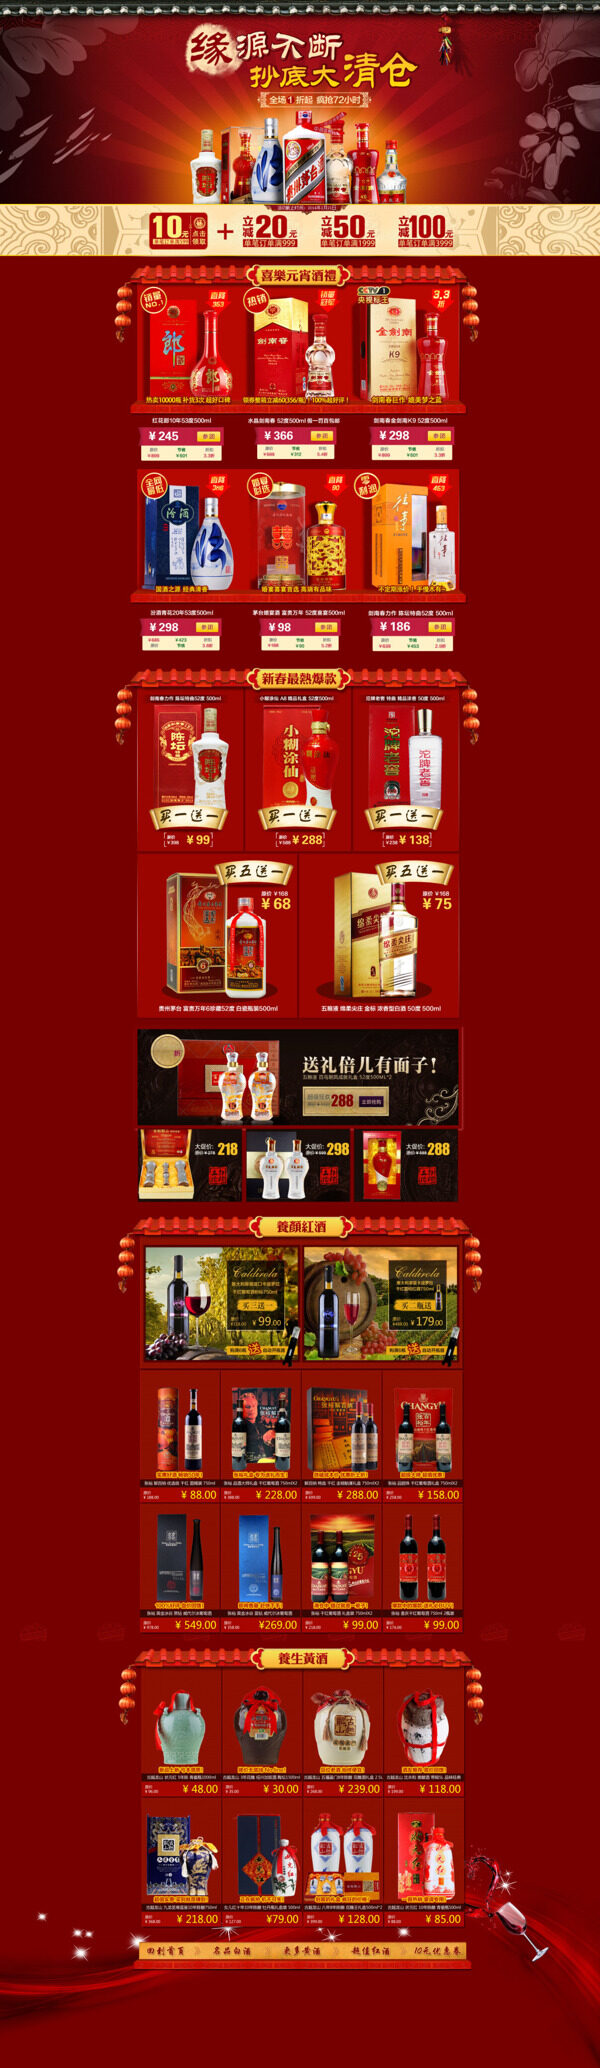 品牌酒类产品促销psd海报